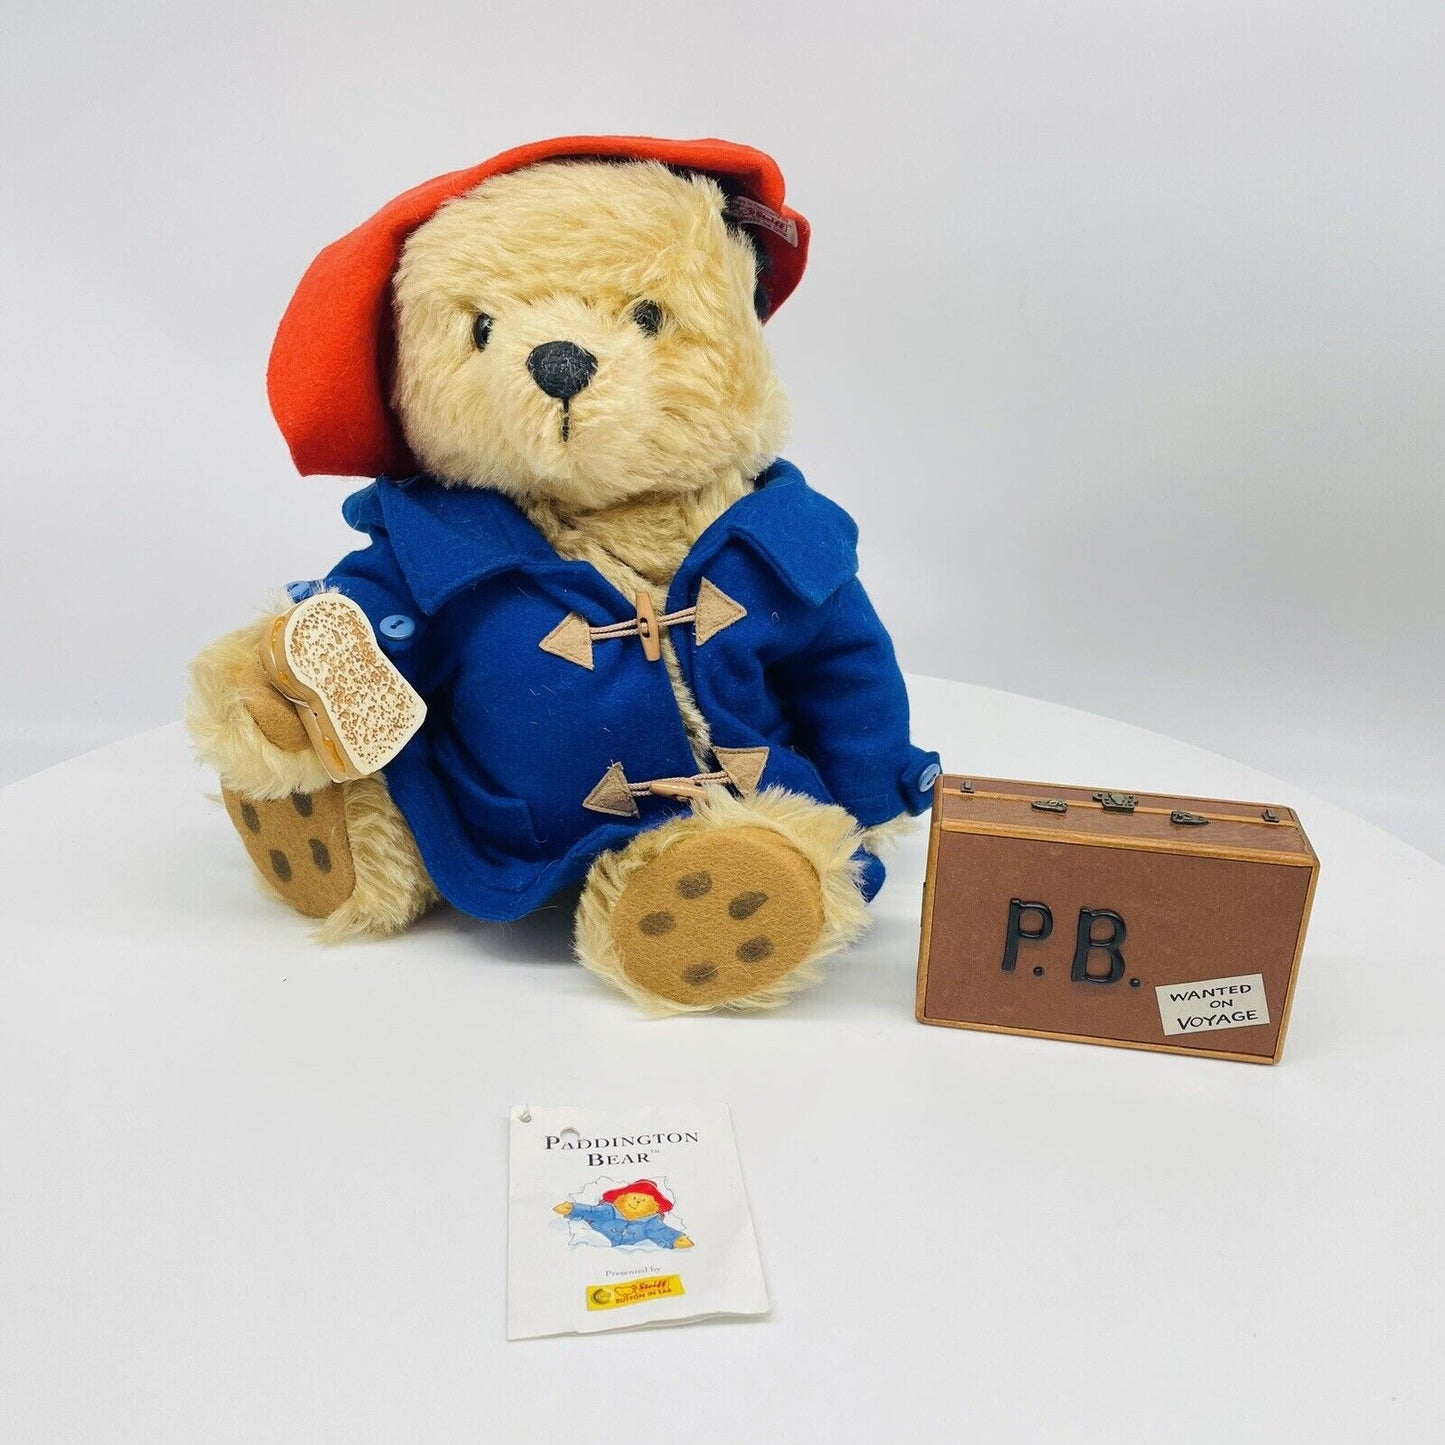 Steiff Teddybär Paddington Bear 354250 limitiert 5000 aus 2003 32cm Mohair